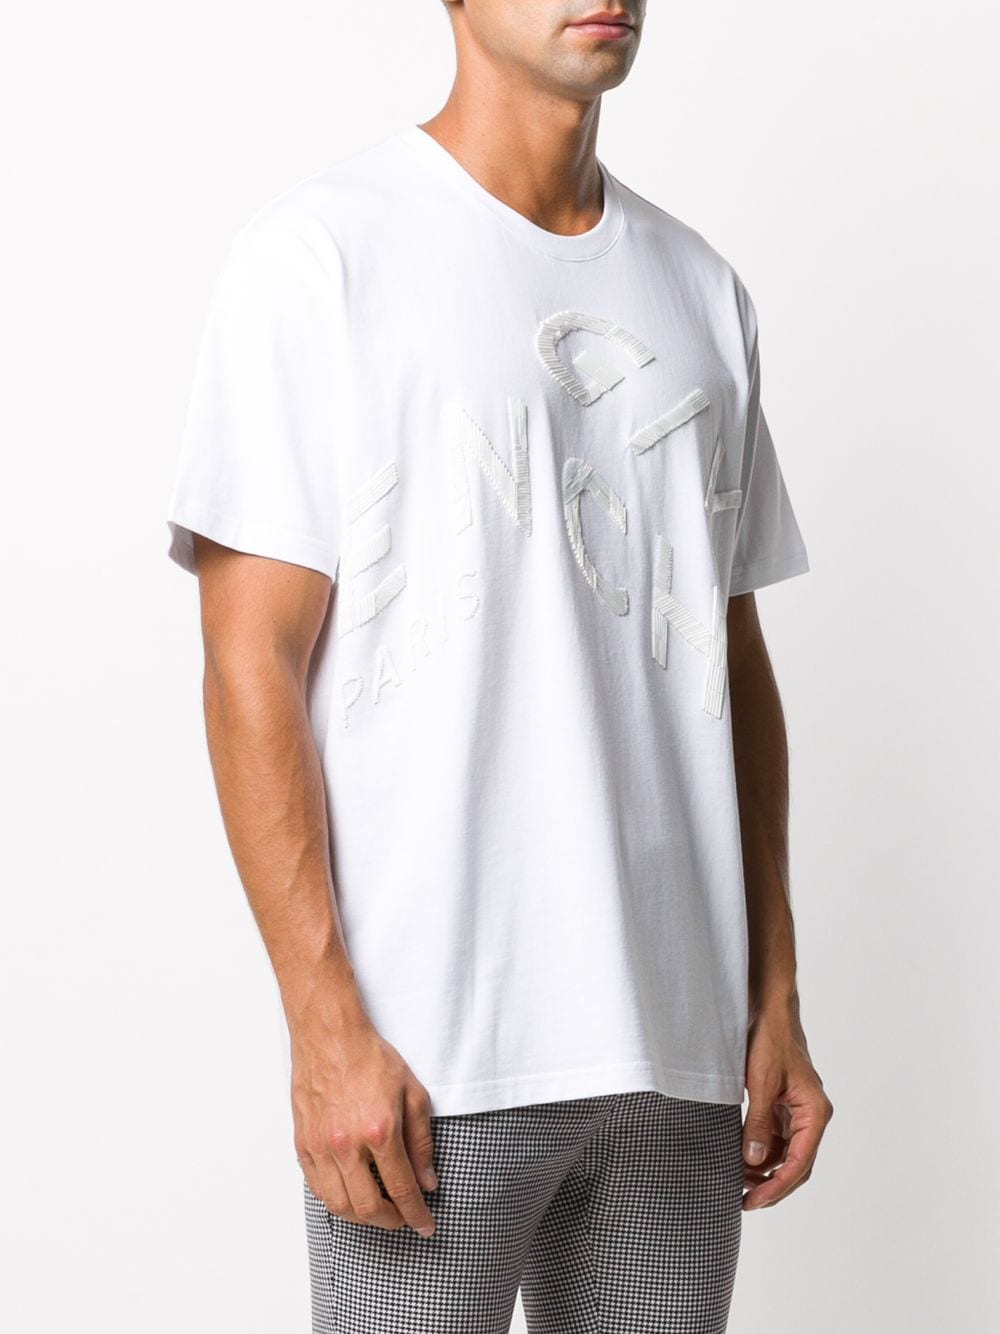 クラシックな白い刺繍入りメンズTシャツ- FW20コレクション